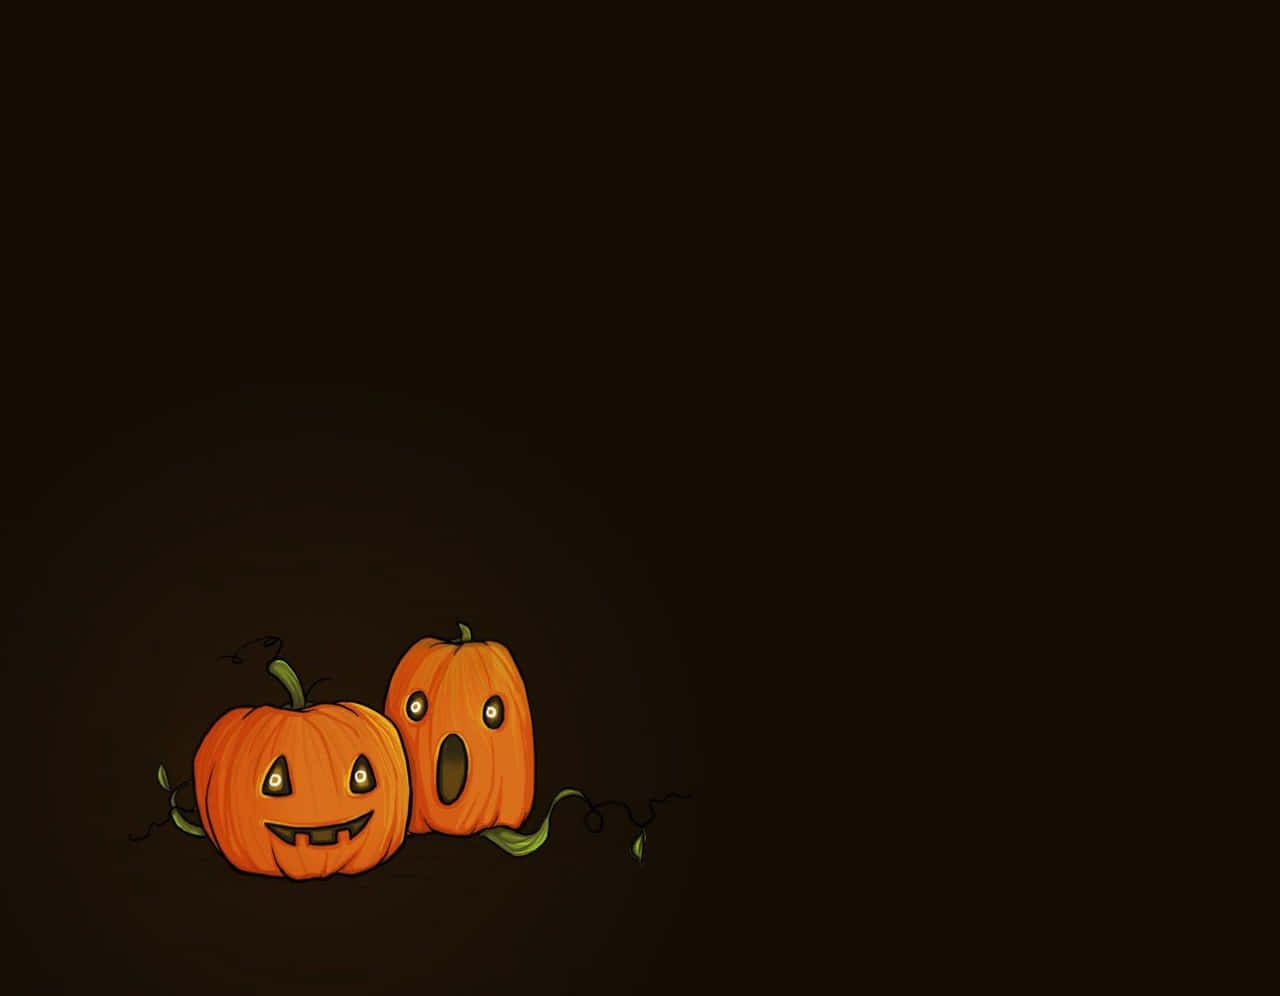 Halloweendibujos Animados Calabazas De Halloween En Imagen Negra